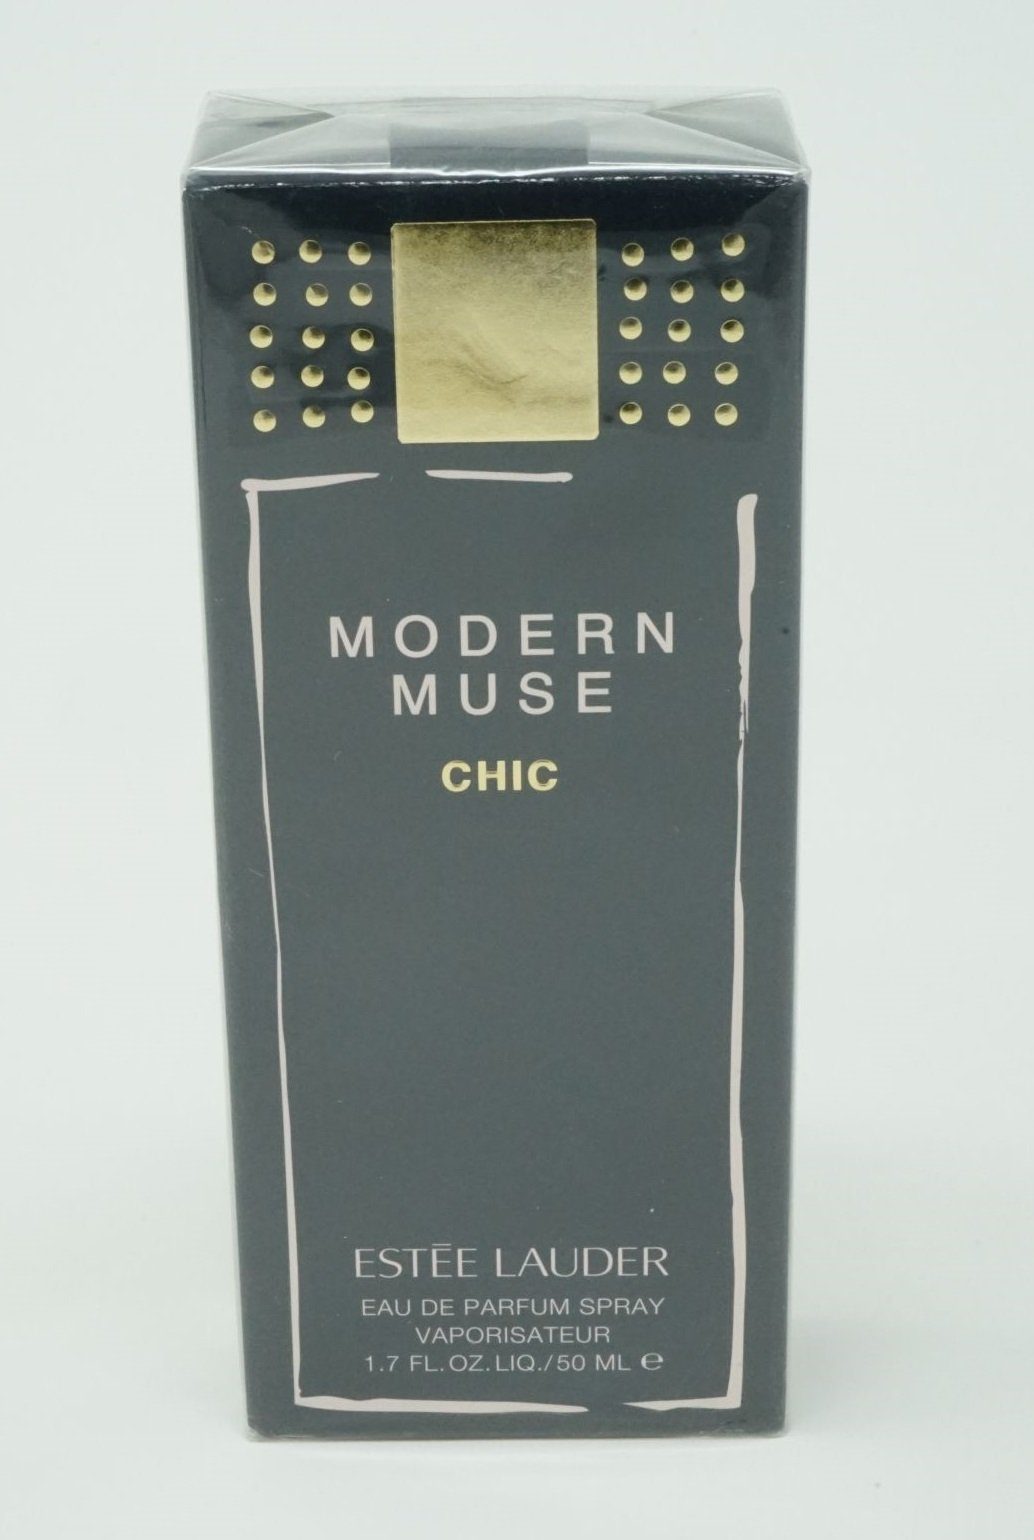 ESTÉE LAUDER Eau de Parfum Estee Lauder Modern Muse Chic Eau de Parfum Spray 50 ml